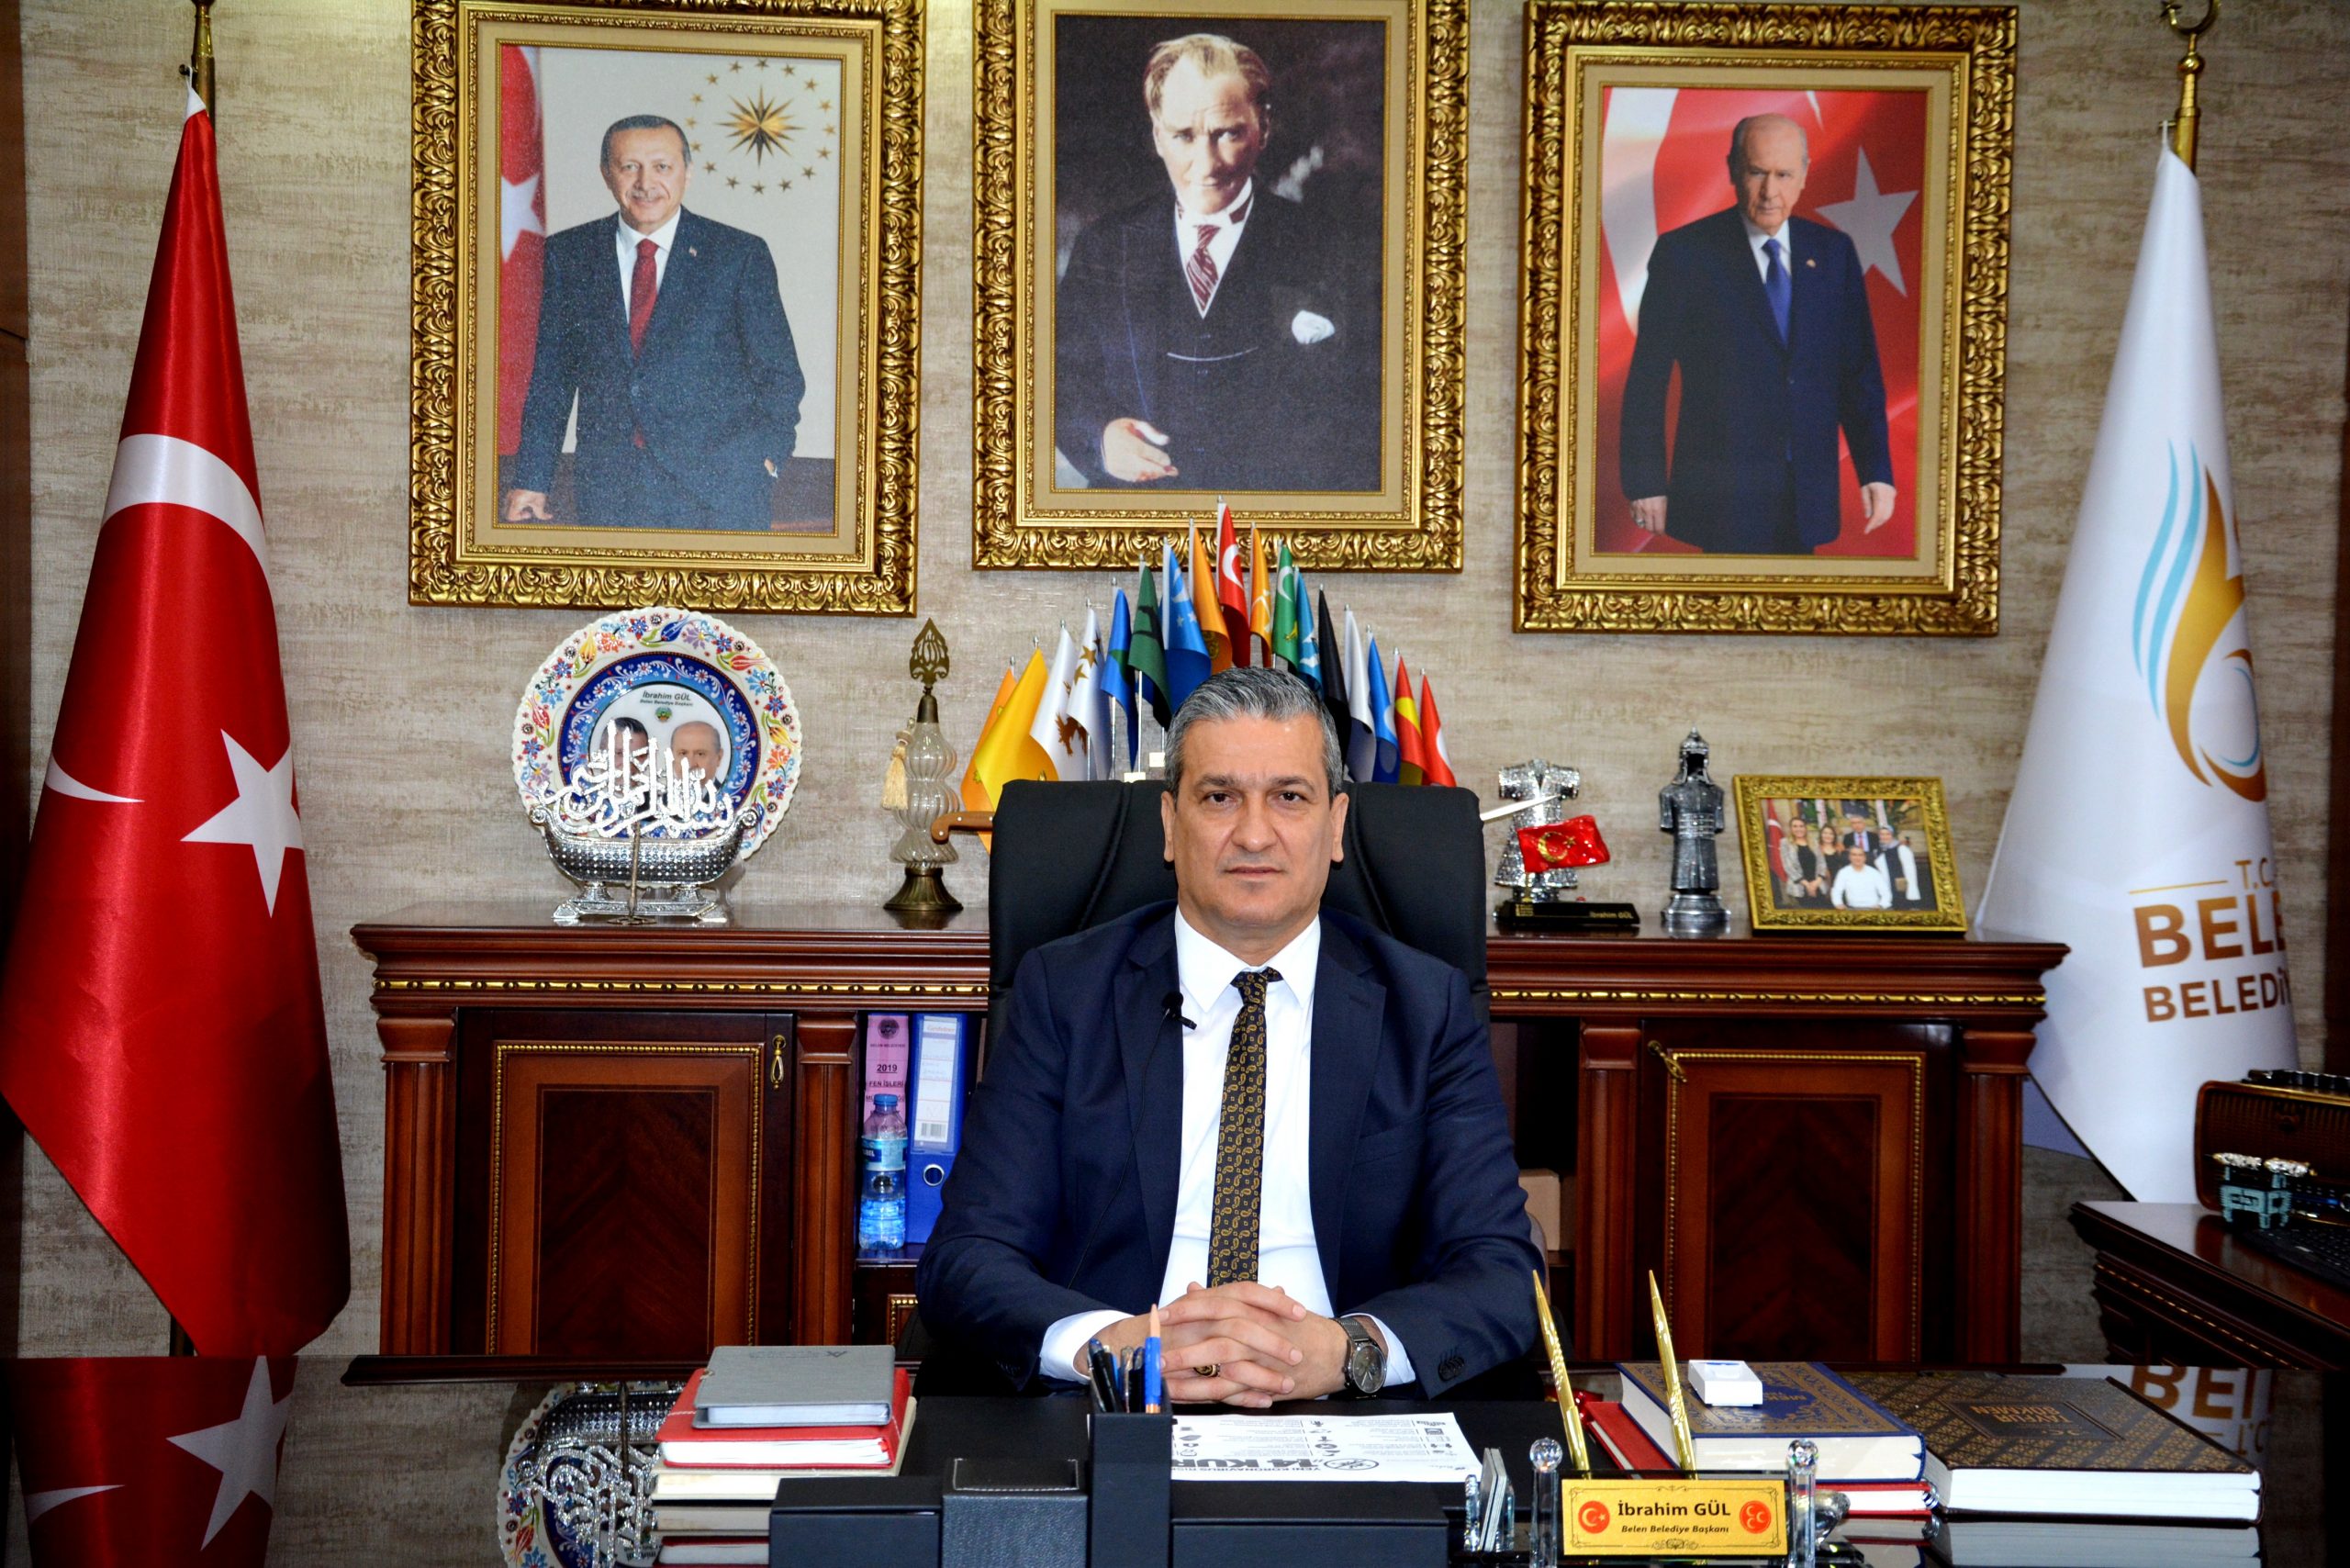 Belen Belediye Başkanı İbrahim Gül; Ortak kullanım alanlarının işgaline, son vereceğiz